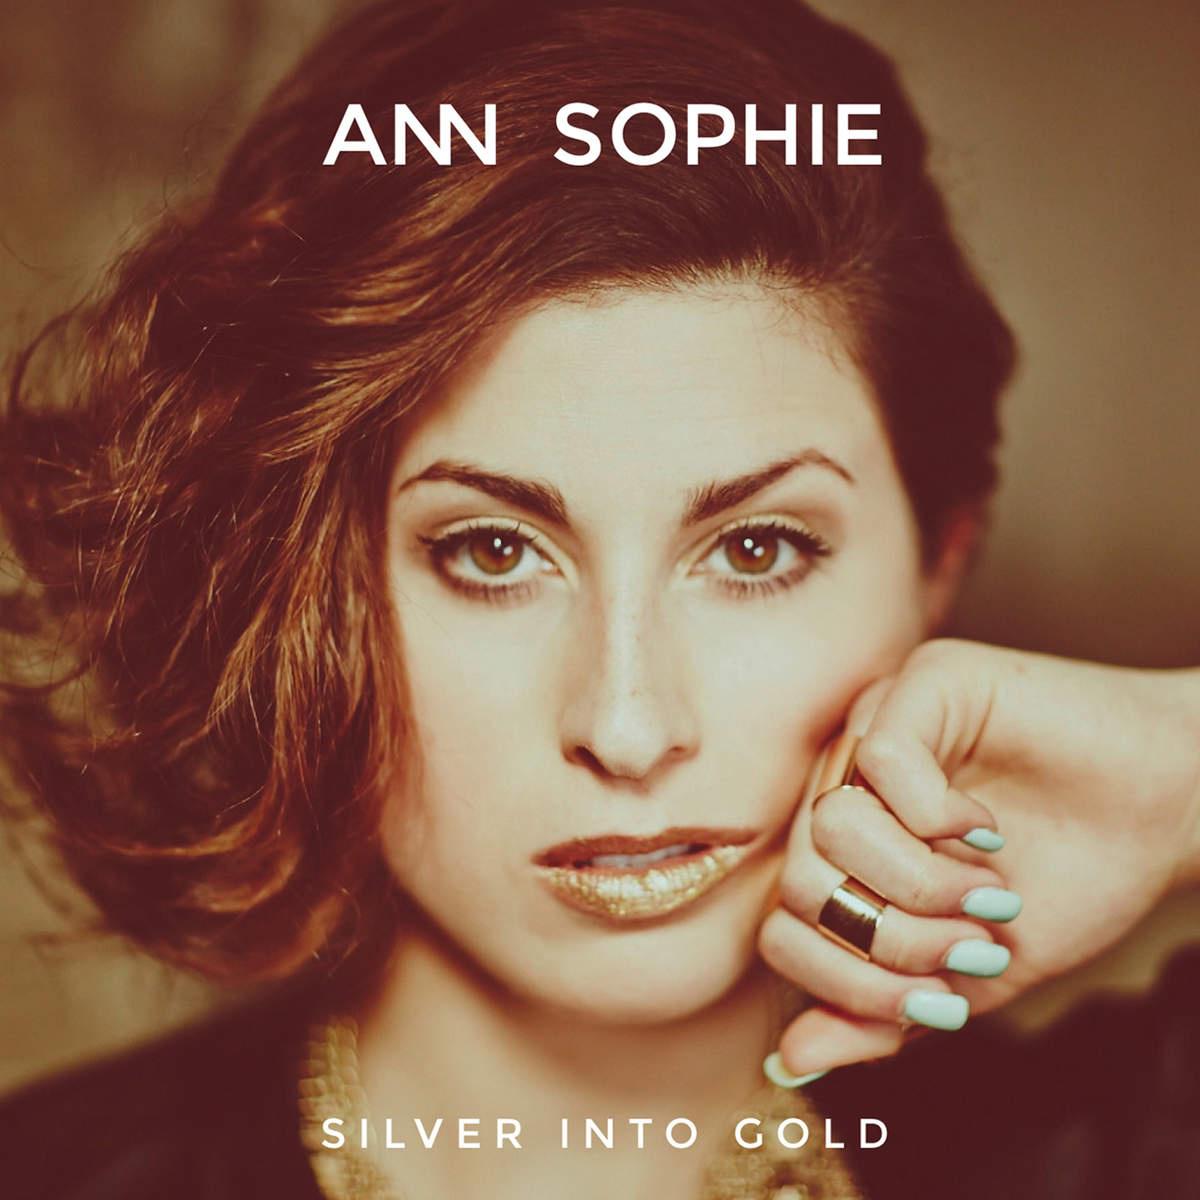 Jump the Gun歌词 歌手Ann Sophie-专辑Silver Into Gold-单曲《Jump the Gun》LRC歌词下载